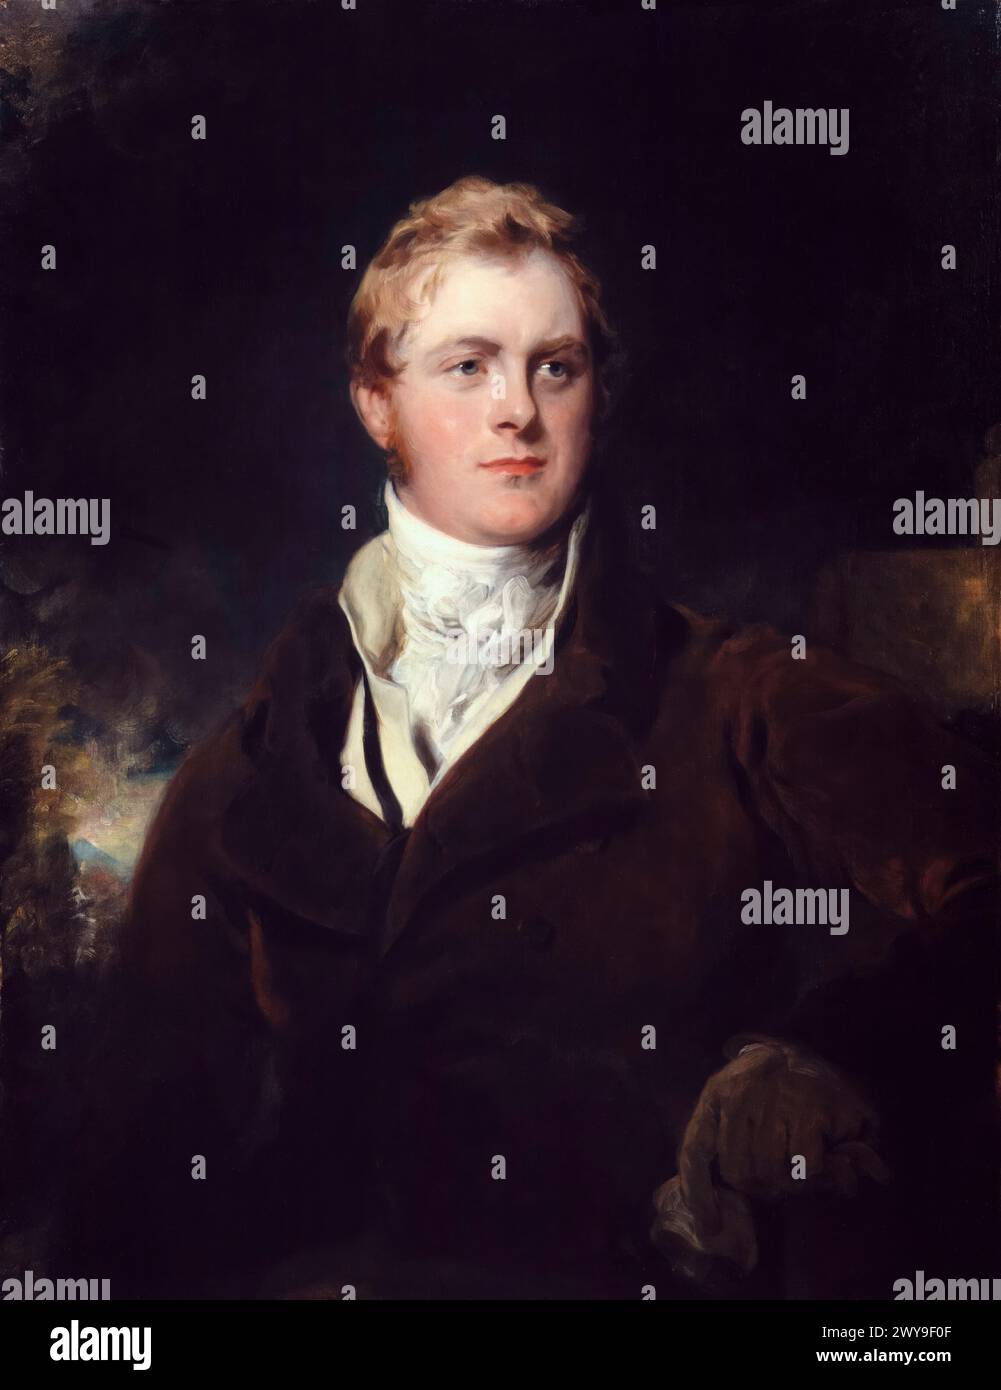 Frederick John Robinson, 1er vicomte Goderich (1782-1859), homme politique conservateur et premier ministre du Royaume-Uni de 1827 à 1828, portrait peint à l'huile sur toile par Sir Thomas Lawrence, vers 1824 Banque D'Images